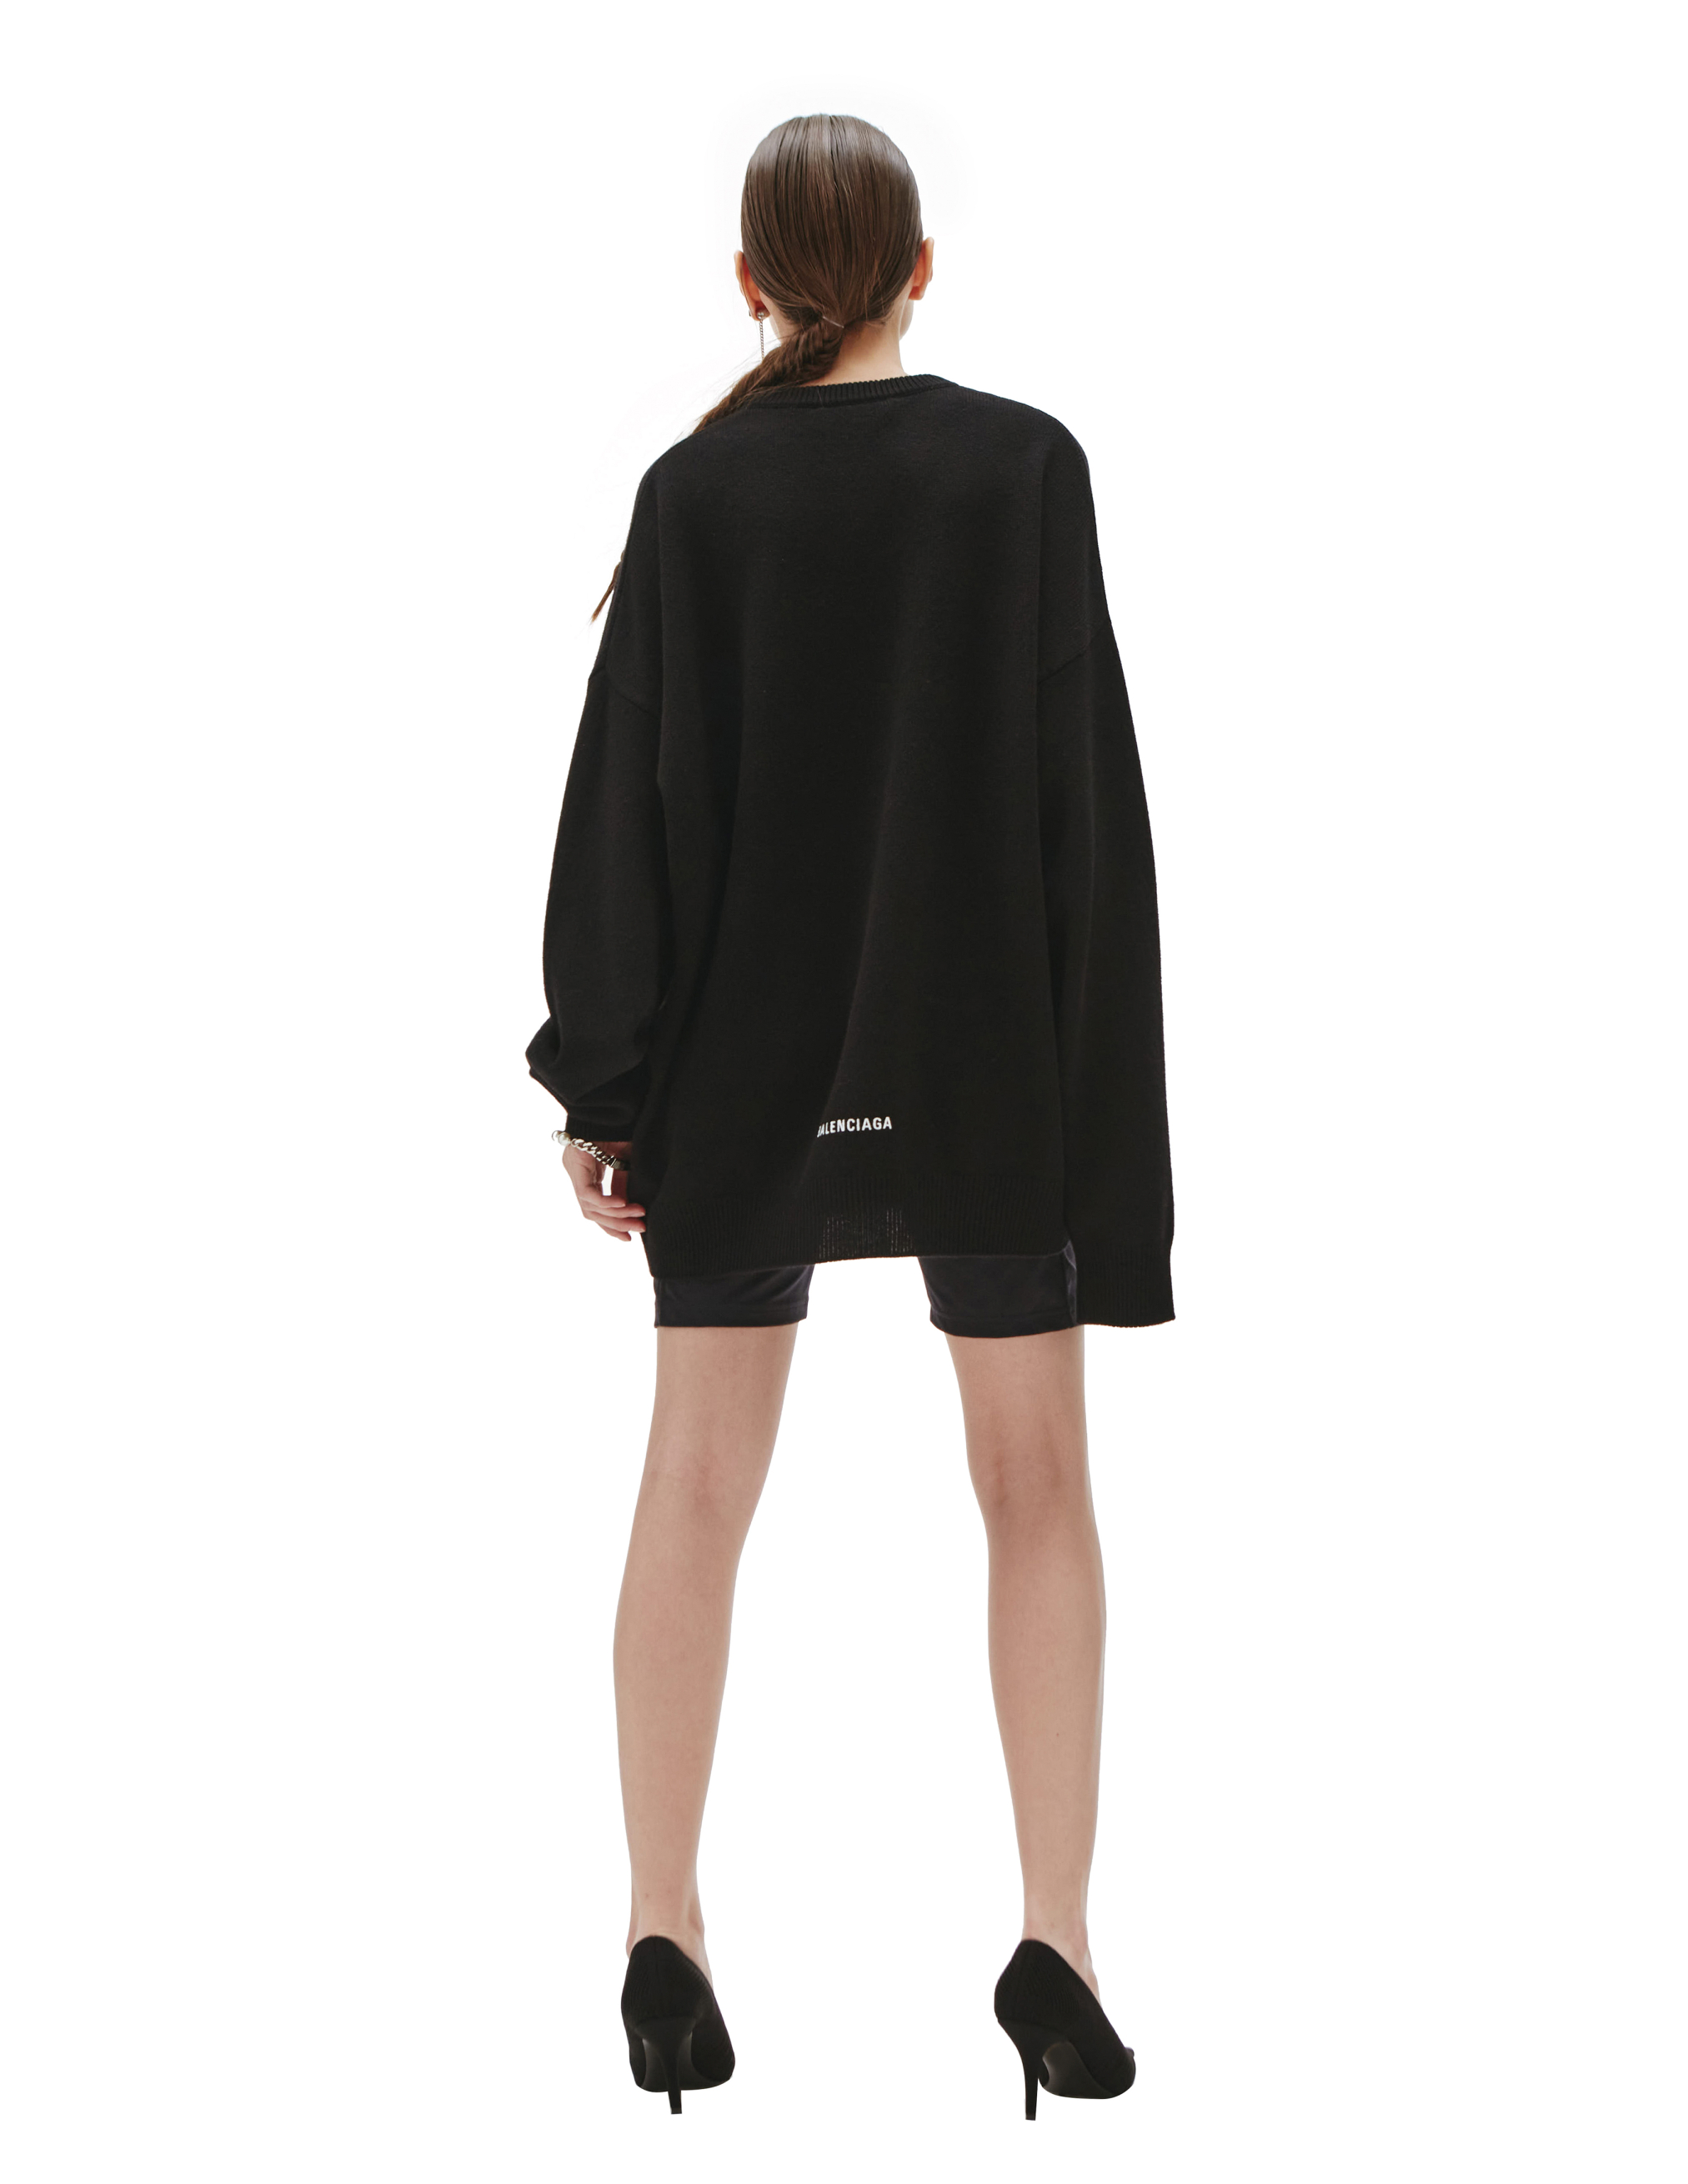 Черный свитер из кашемира Balenciaga 681983/T4124/1000, размер XL;L 681983/T4124/1000 - фото 3